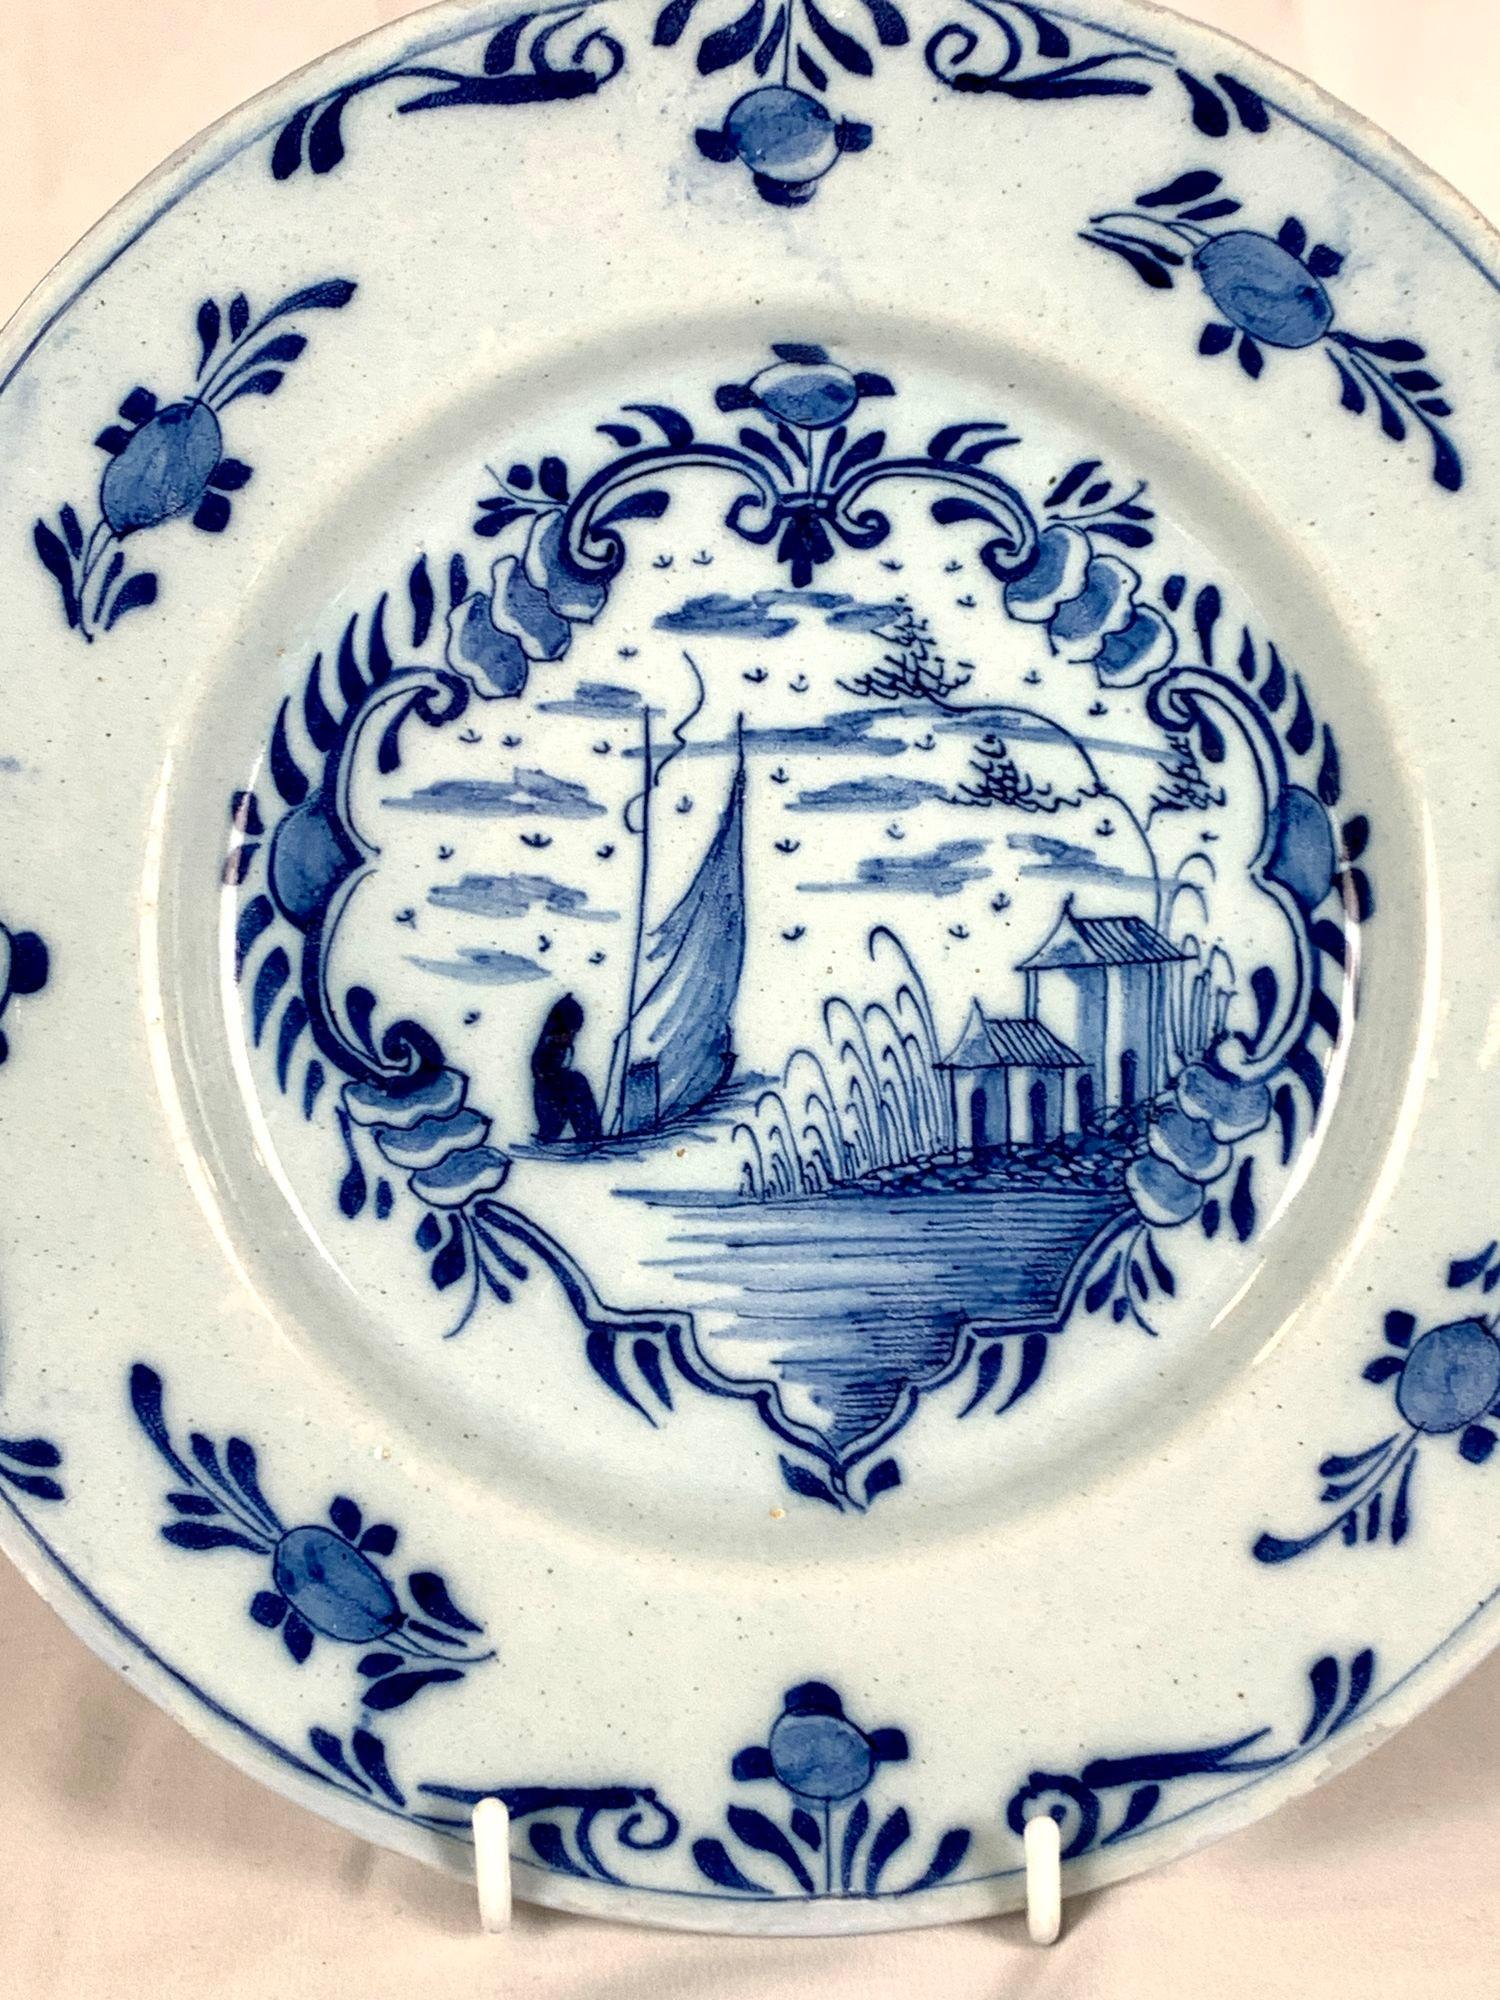 Diese handbemalte blau-weiße Schale wurde um 1770 in Delft in den Niederlanden hergestellt.
Die zentrale Szene ist in einer dekorativen Kartusche dargestellt.
Wir sehen einen Fischer auf einem Segelboot, der sich vom Betrachter entfernt und aufs